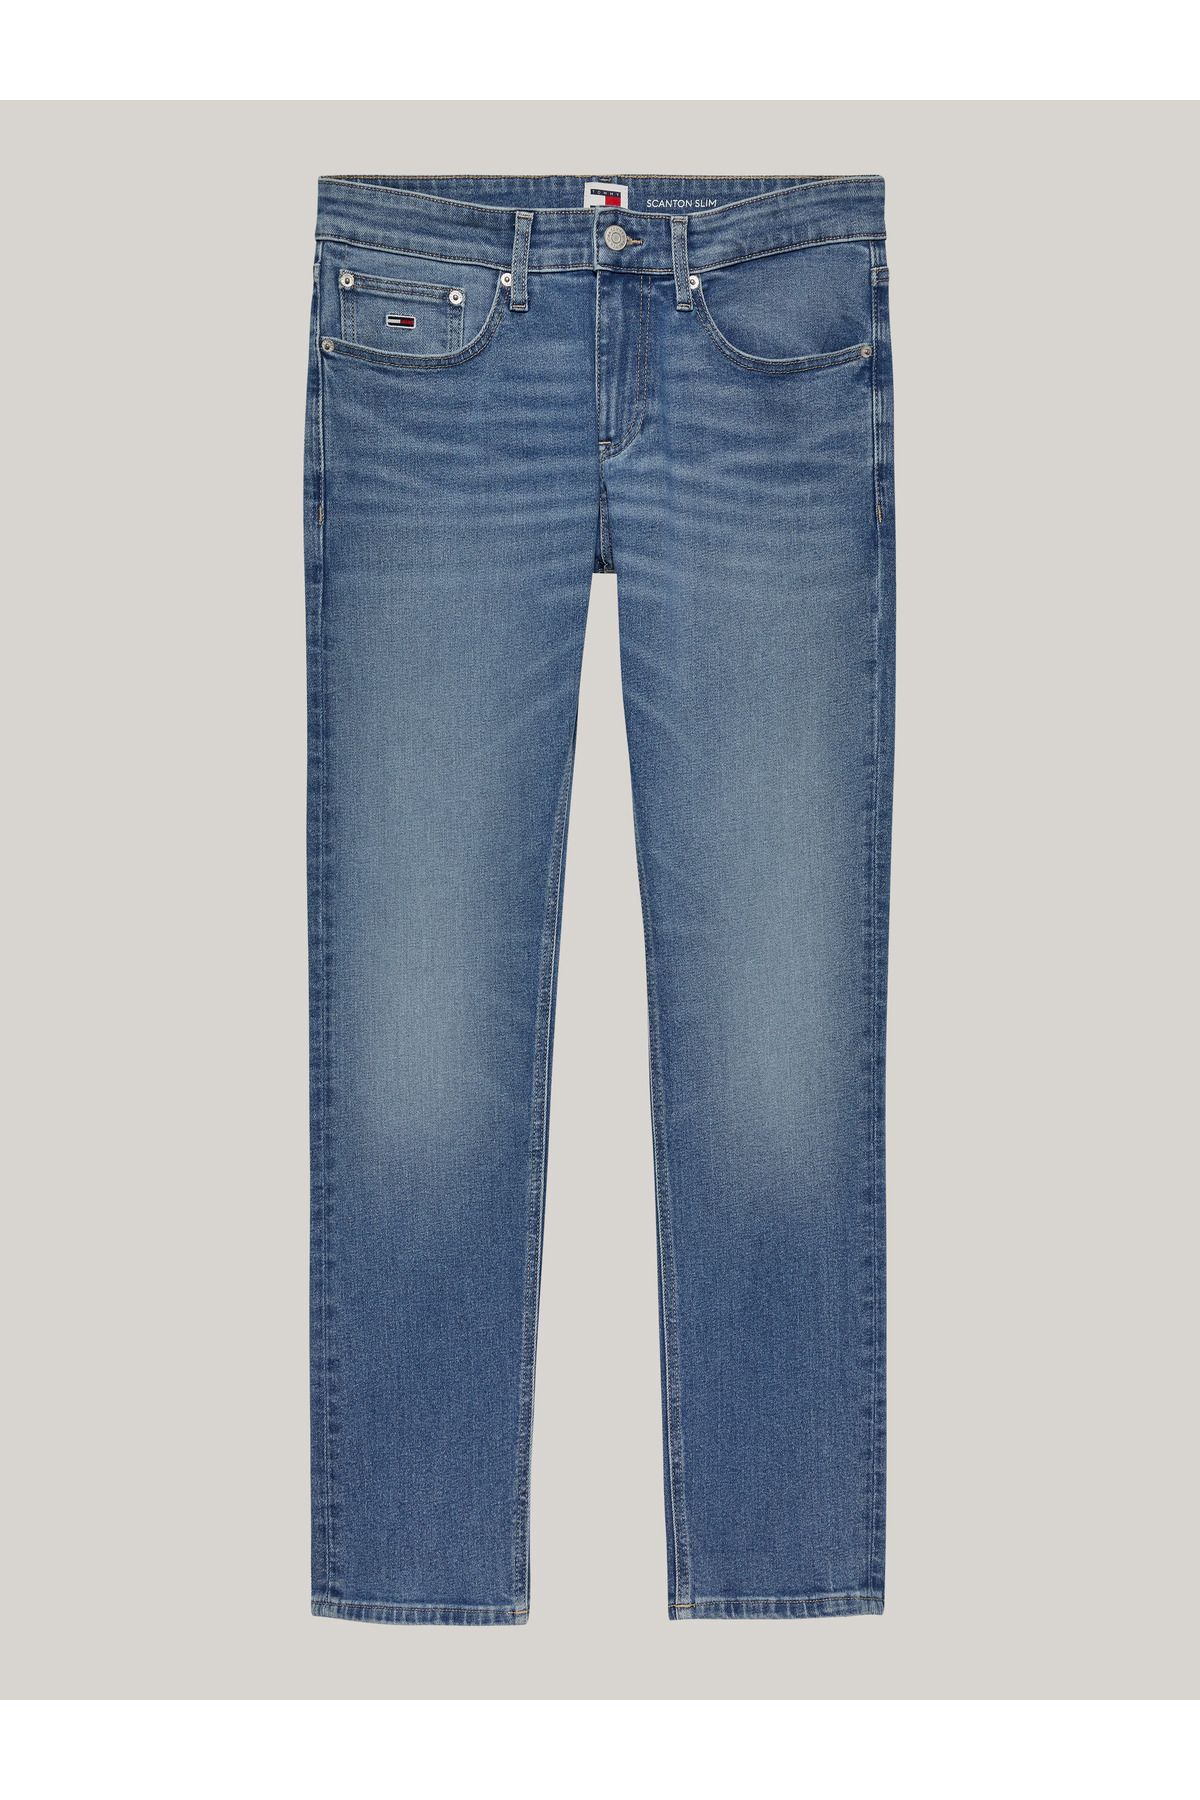 Tommy Hilfiger Erkek Marka Logolu Scanton Slim Fit Şık Görünüşlü Klasik 5 Cepli  Günlük Kullanıma Uygun Denim Jeans